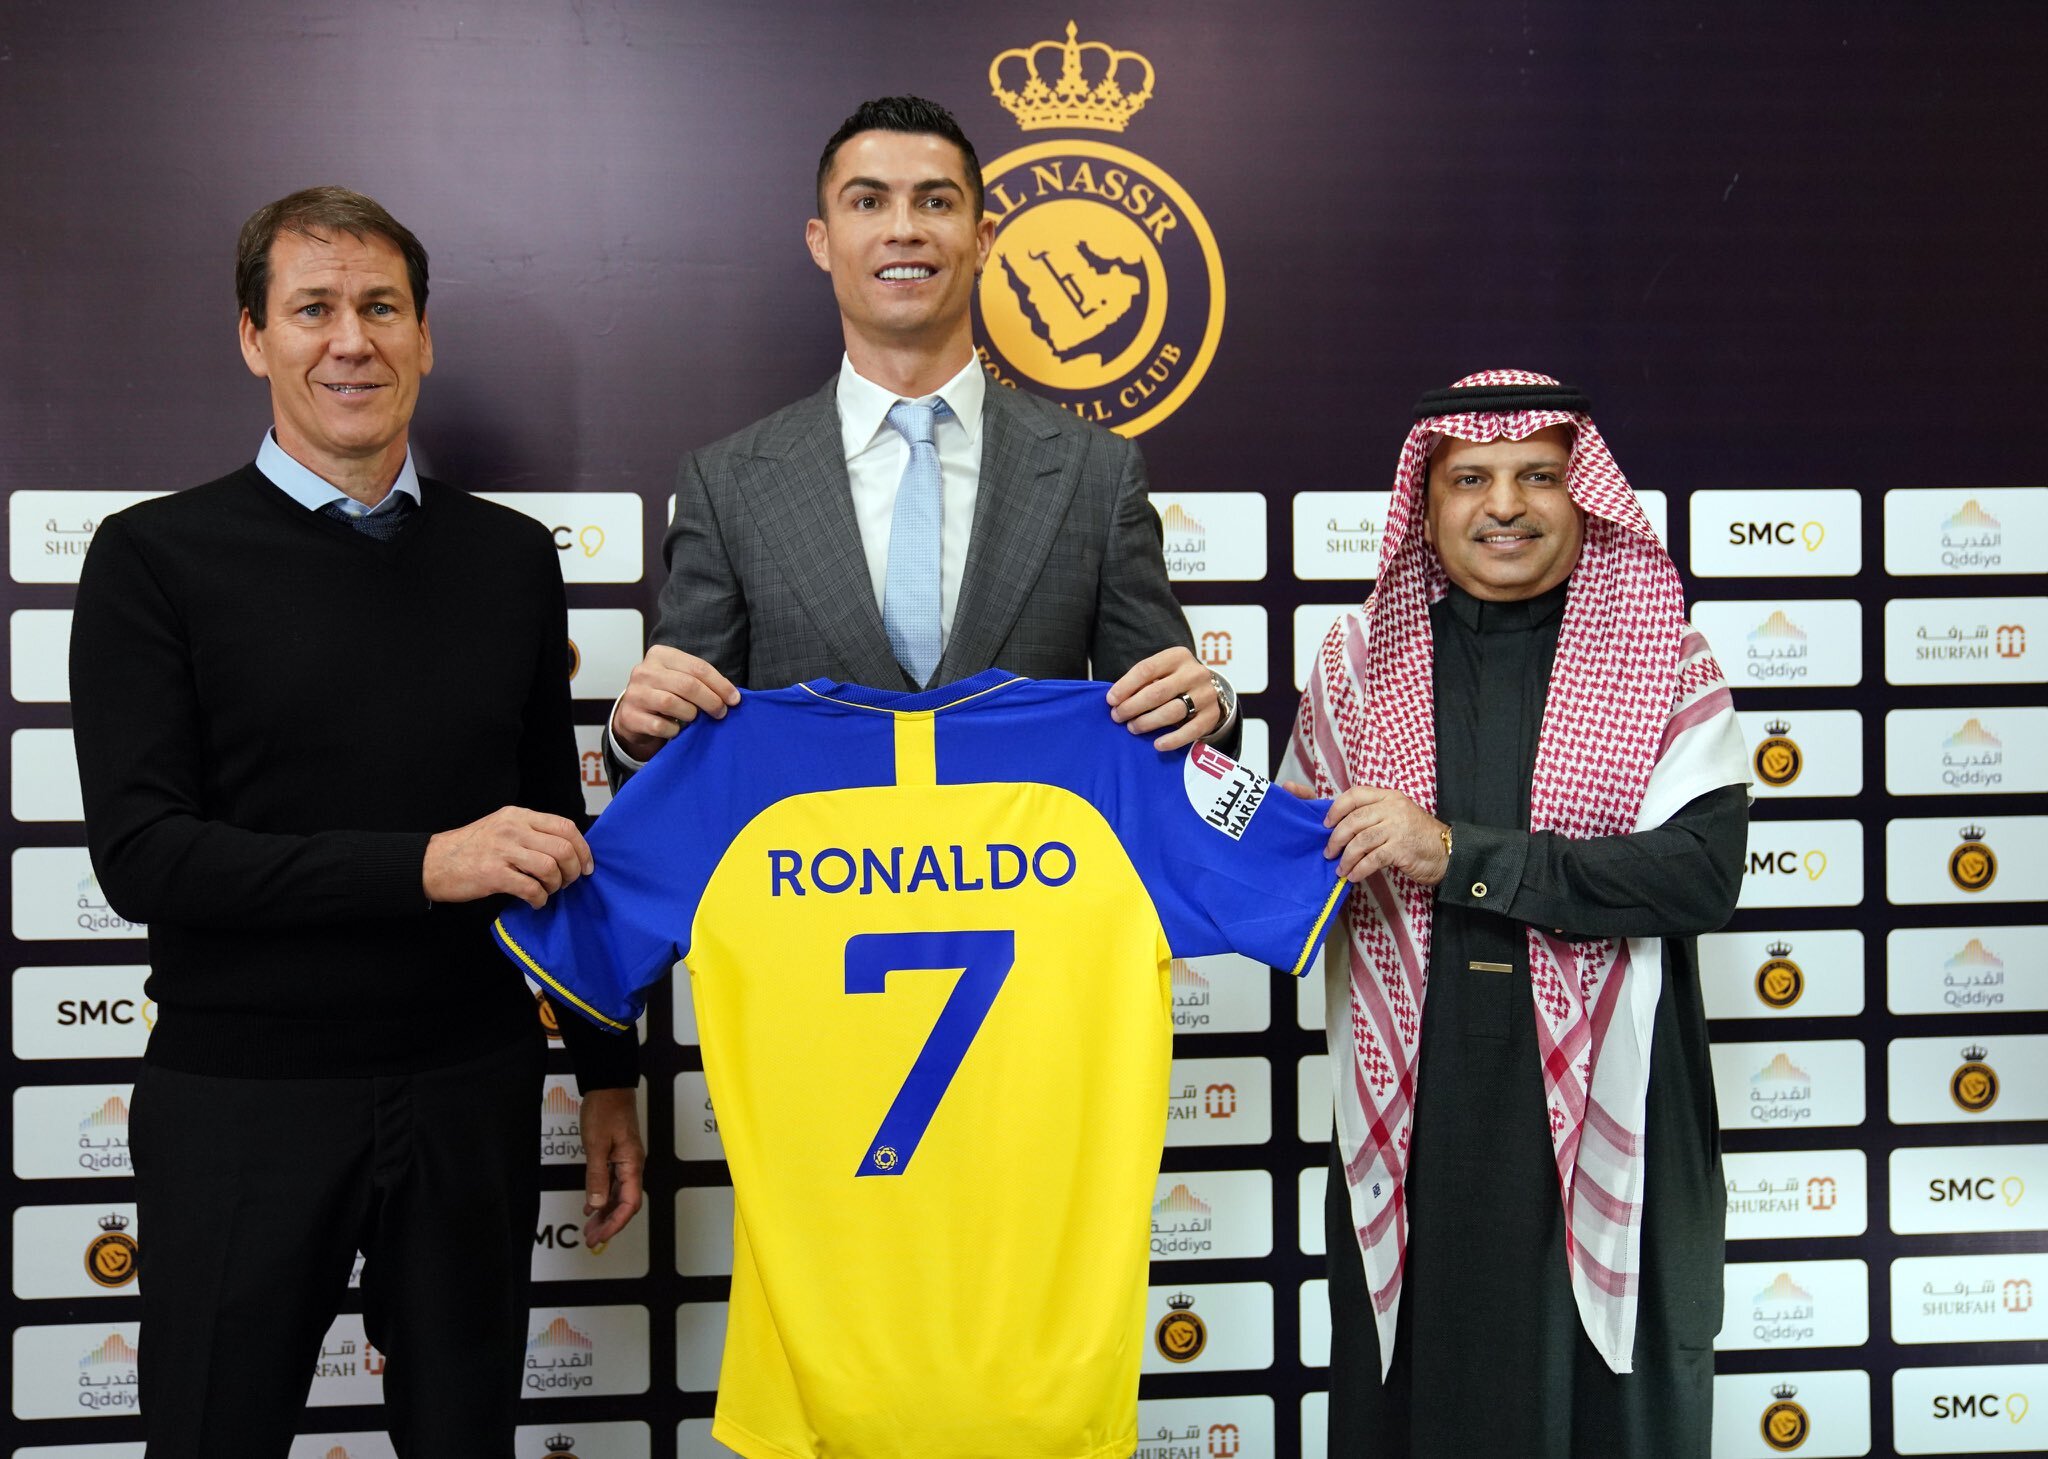 Cristiano Ronaldo na sua apresentação do clube Al-Nassr Football Club